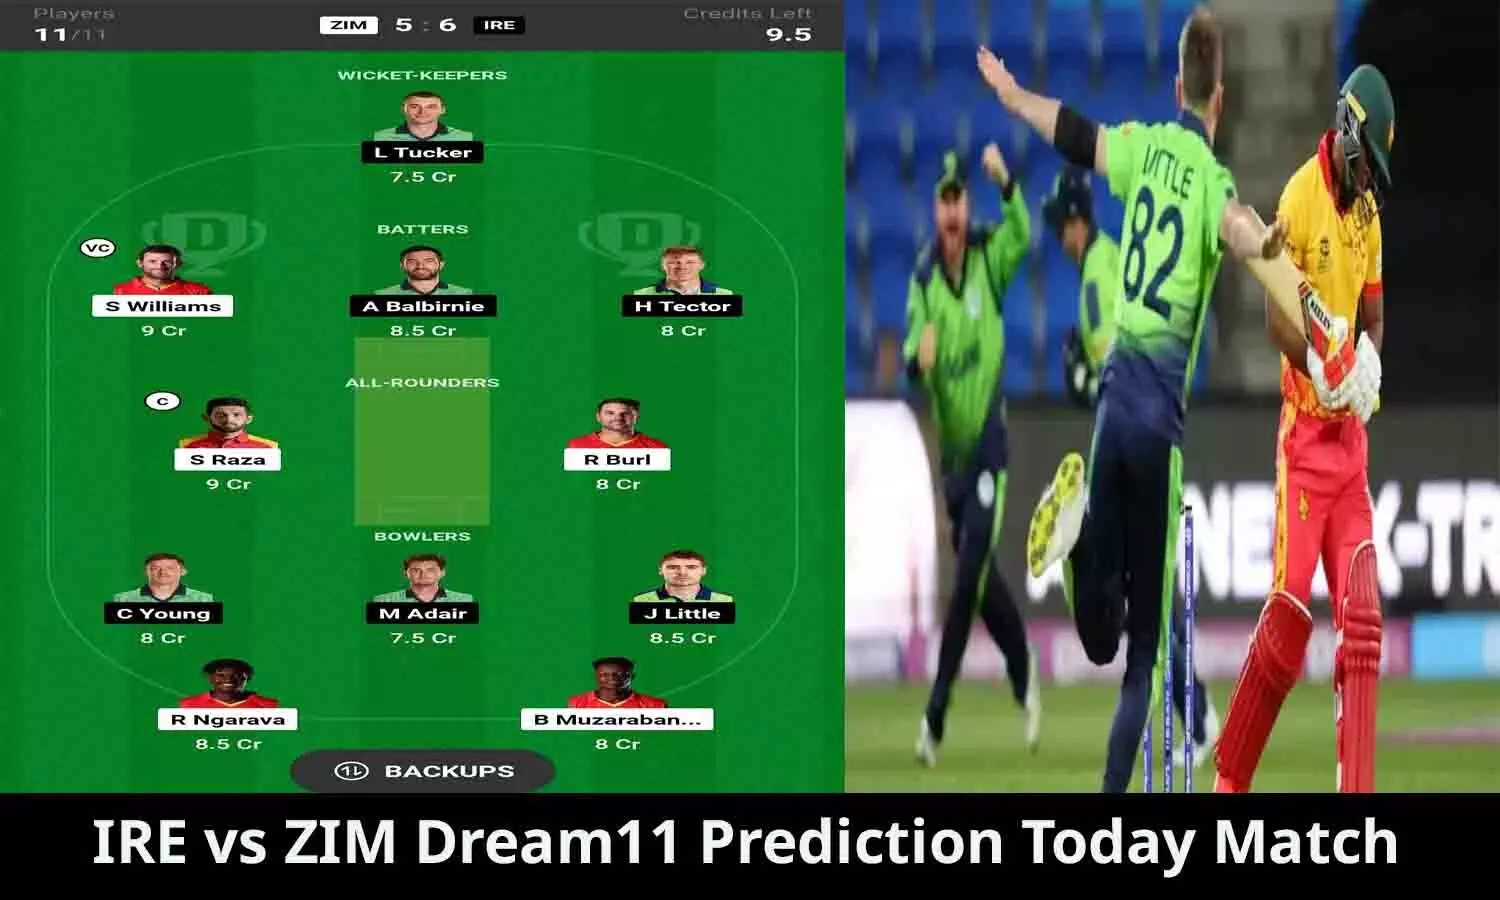 IRE vs ZIM Dream11 Prediction Today Match In Hindi: मालामाल बनने के लिए इन खिलाड़ियों को करे ड्रीम 11 में शामिल, तुरंत ध्यान दे